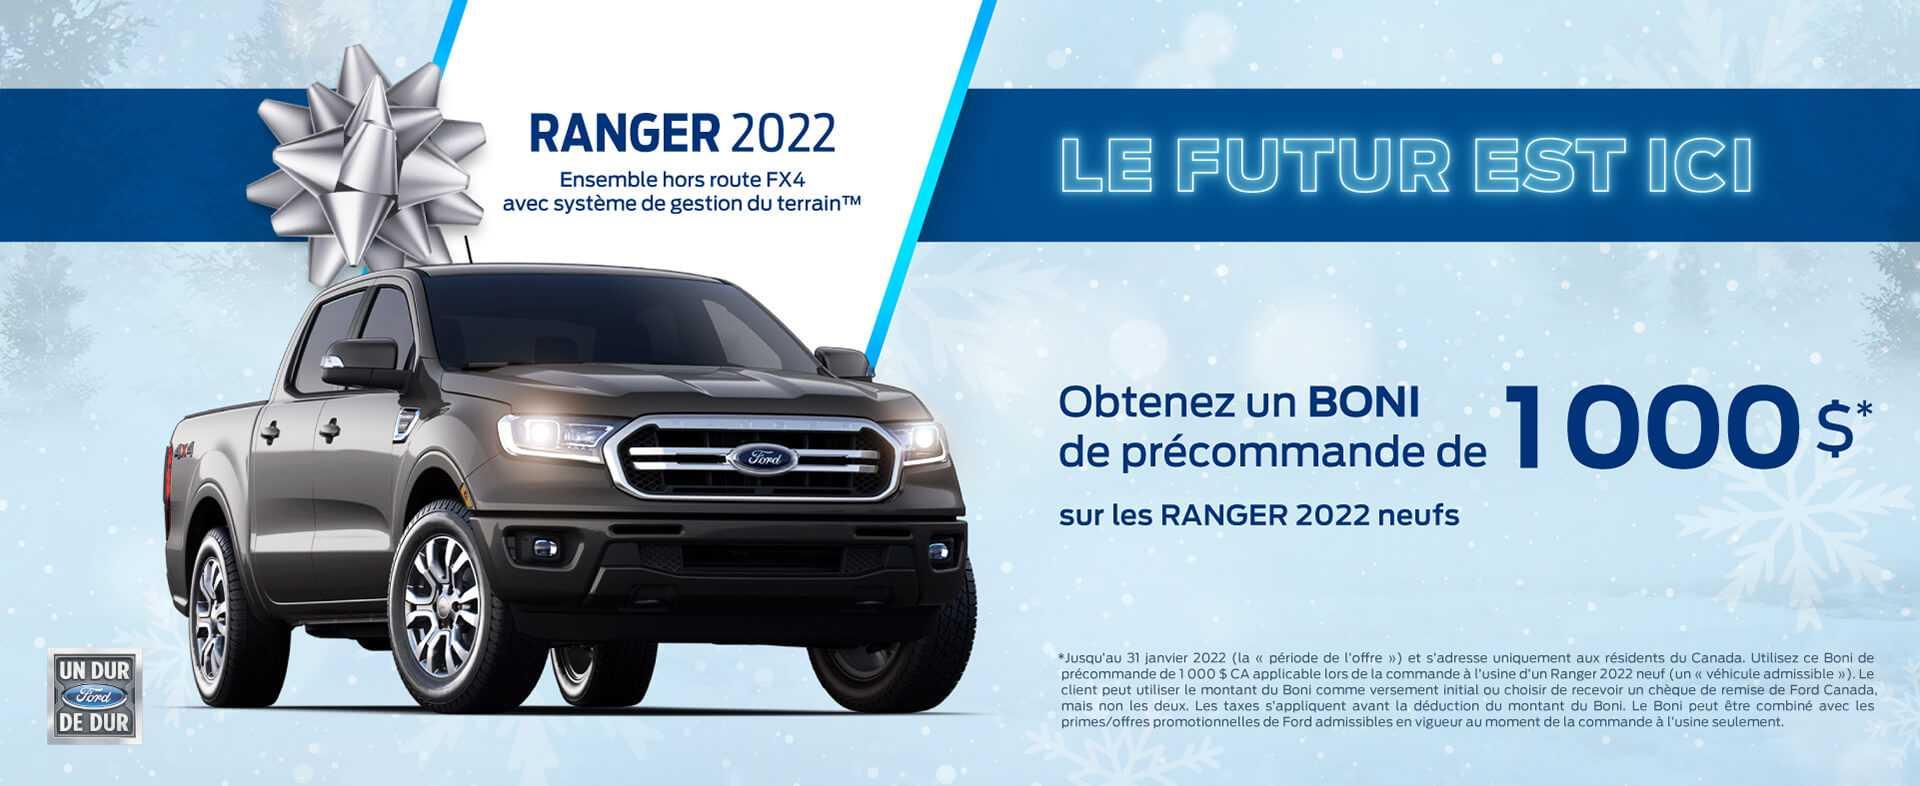 Ranger 2021